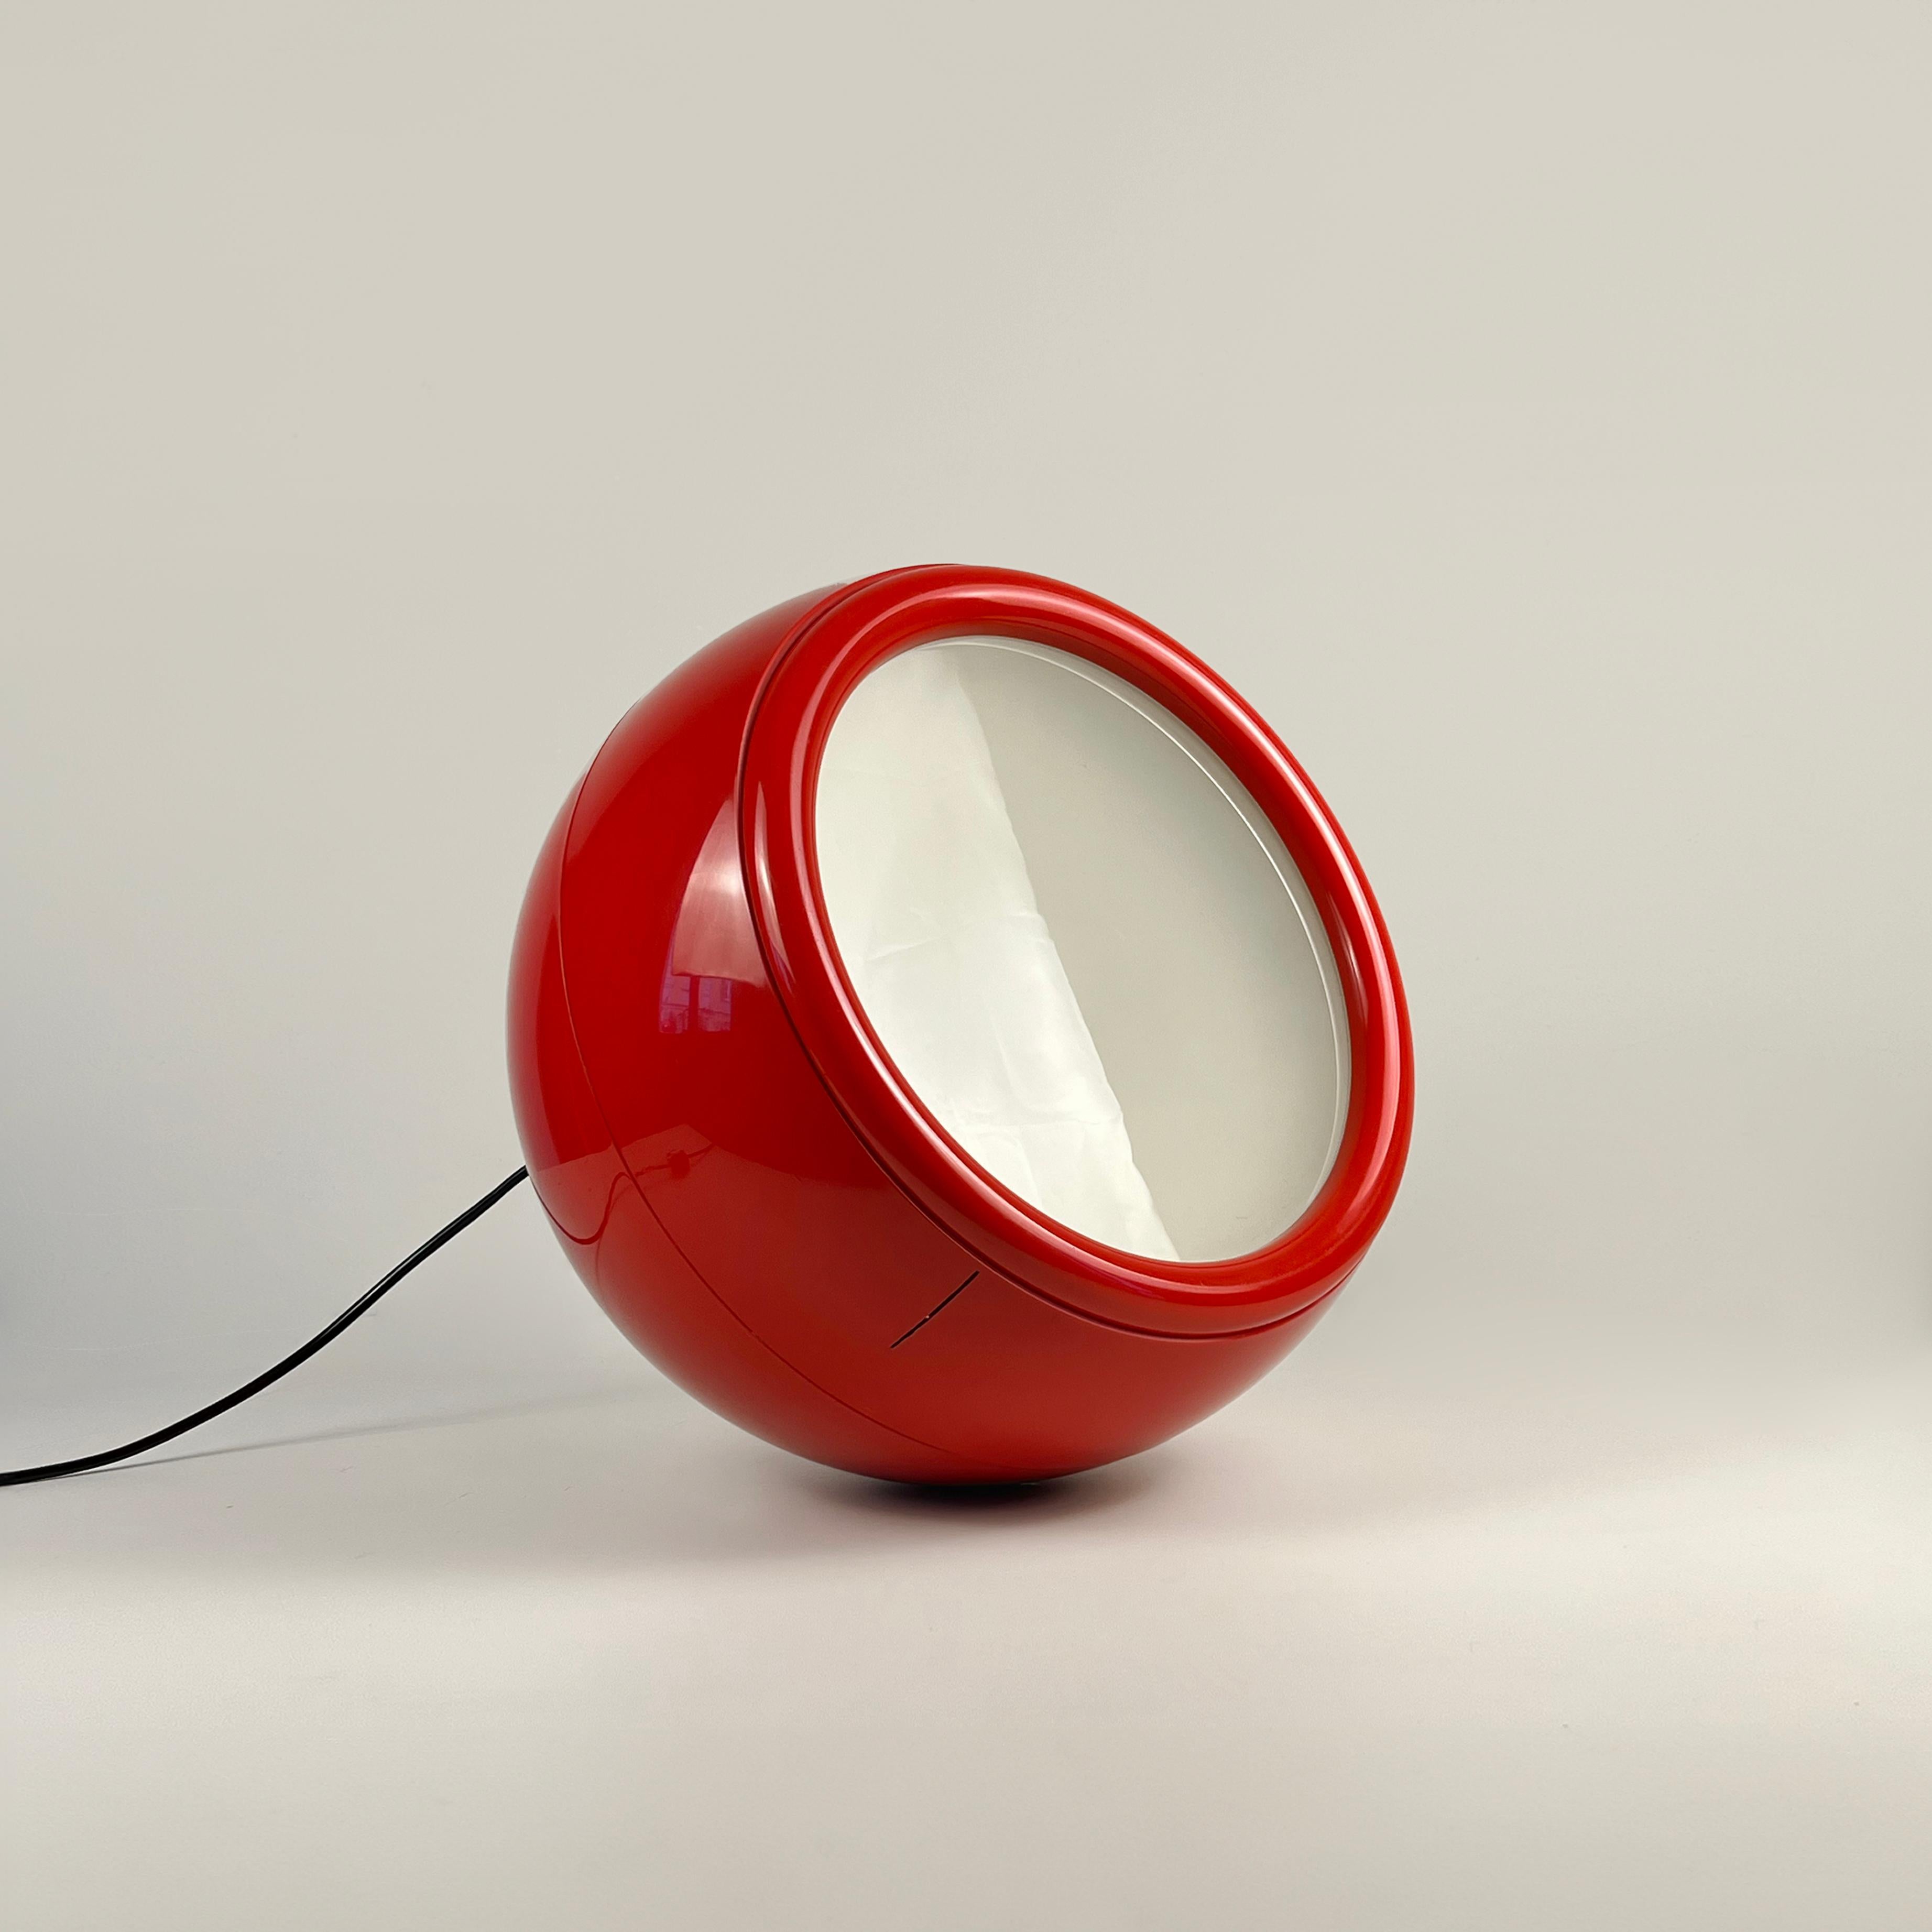 Diese Pallade Stehleuchte, die von Studio Tetrarch in den 1970er Jahren entworfen wurde, ist eine seltene Erstausgabe in einem schönen Rot und mit dem Originalschalter von Artemide versehen.

Durchmesser: 40 cm (15 Zoll)
E27-Glühbirnenfassung
